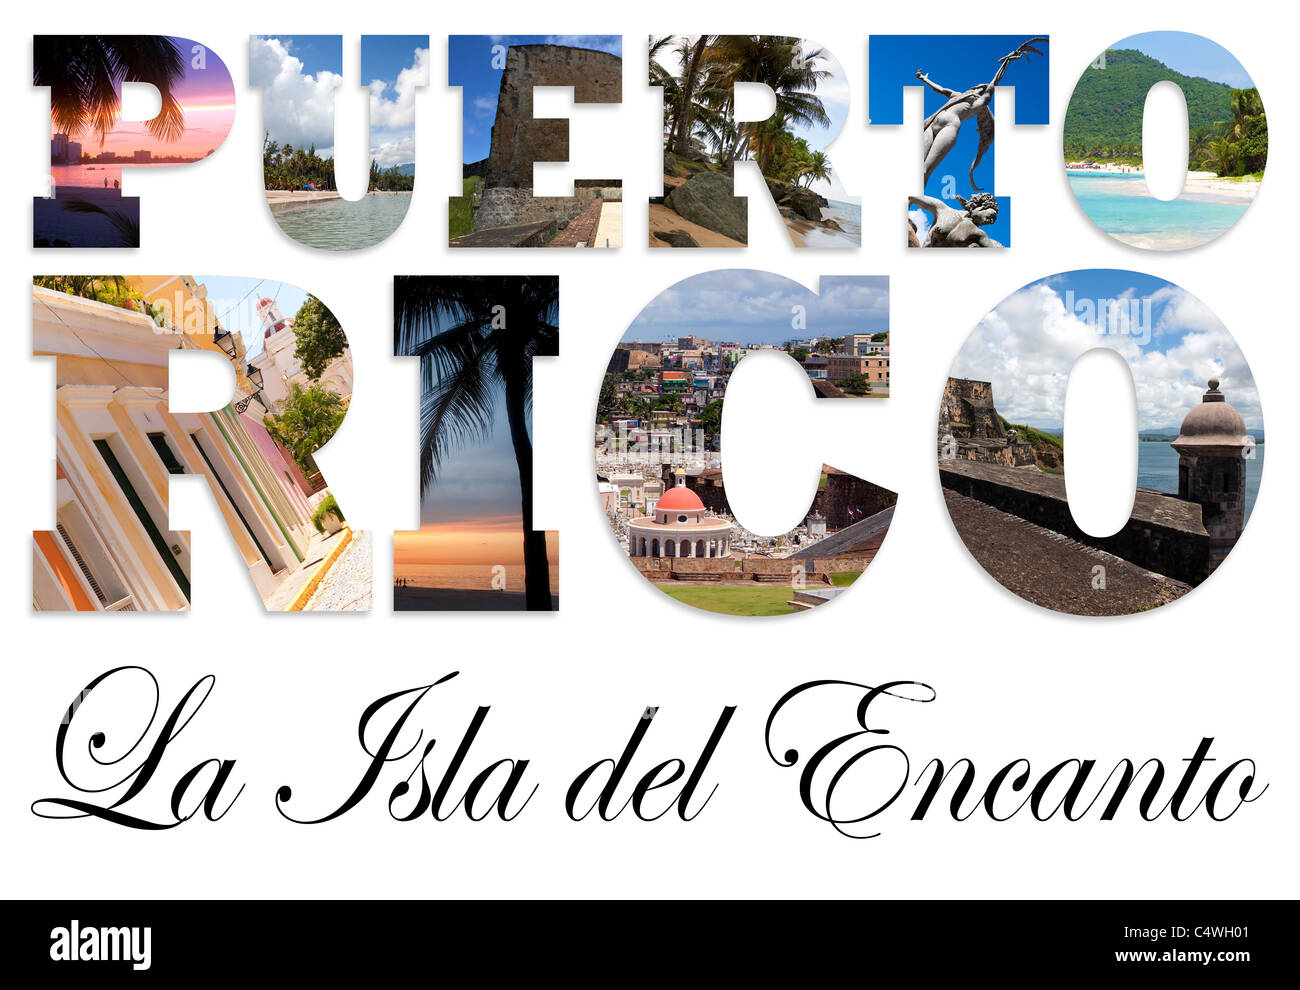 Image result for Puerto Rico: Isla del Encanto